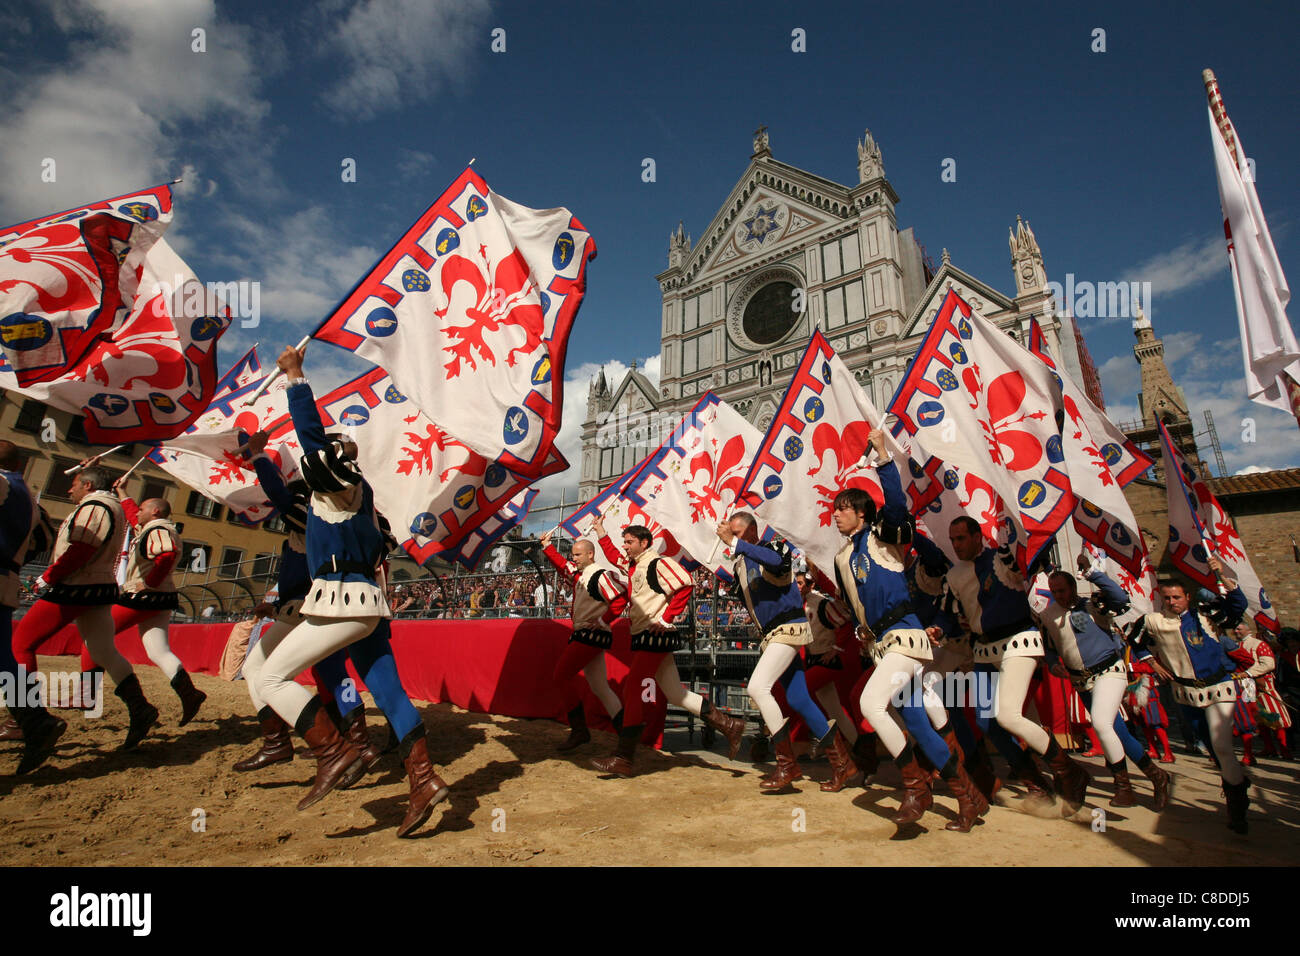 Calcio Storico. La cérémonie d'ouverture de la finale de football historique sur la Piazza di Santa Croce de Florence, Italie. Banque D'Images